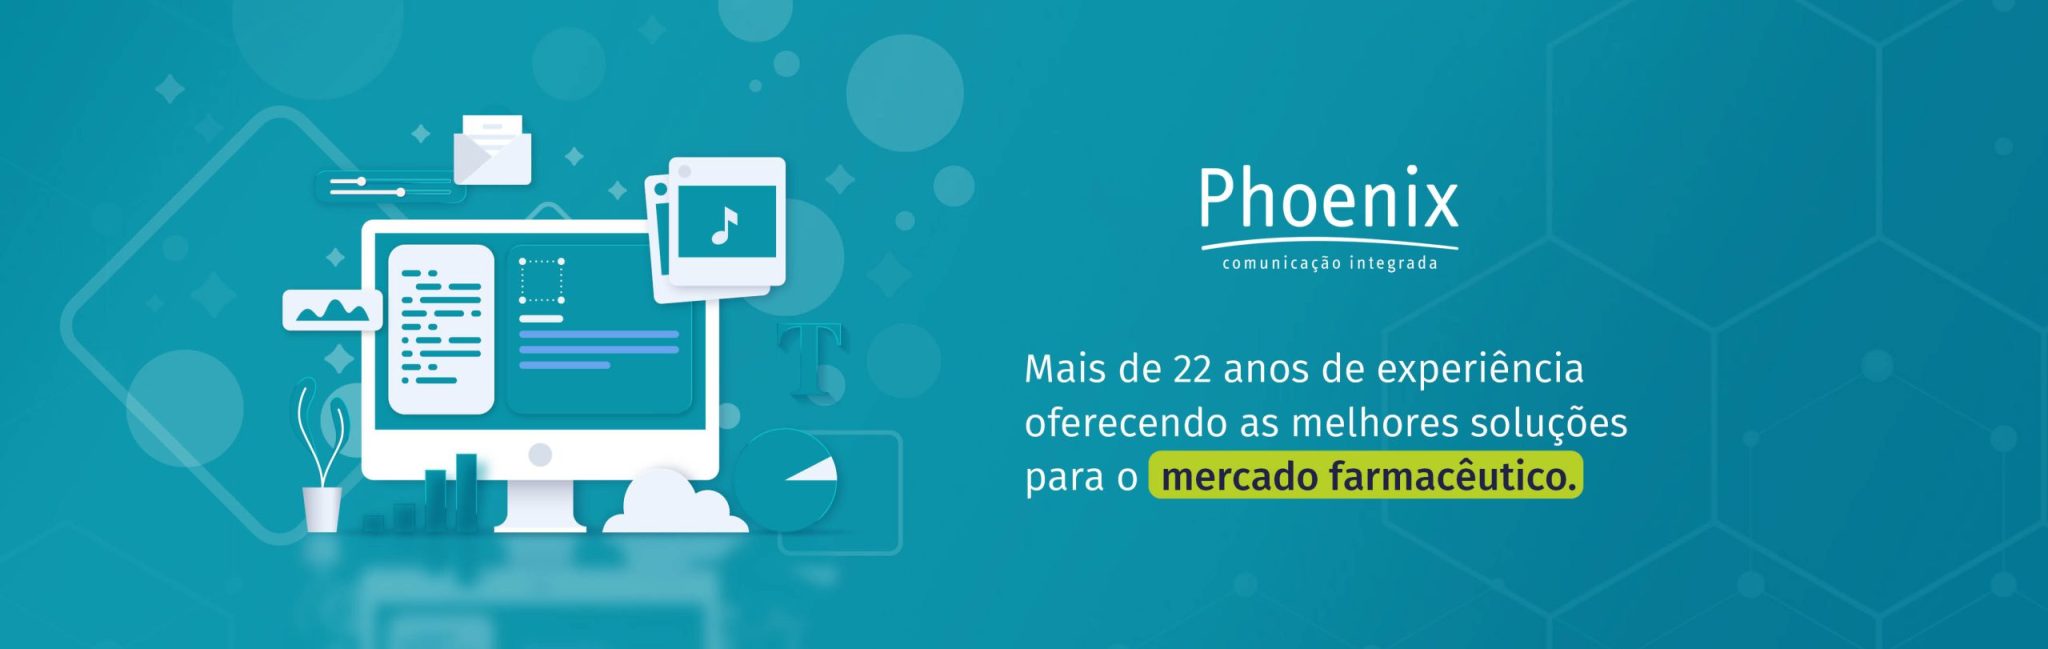 phoenix-2048